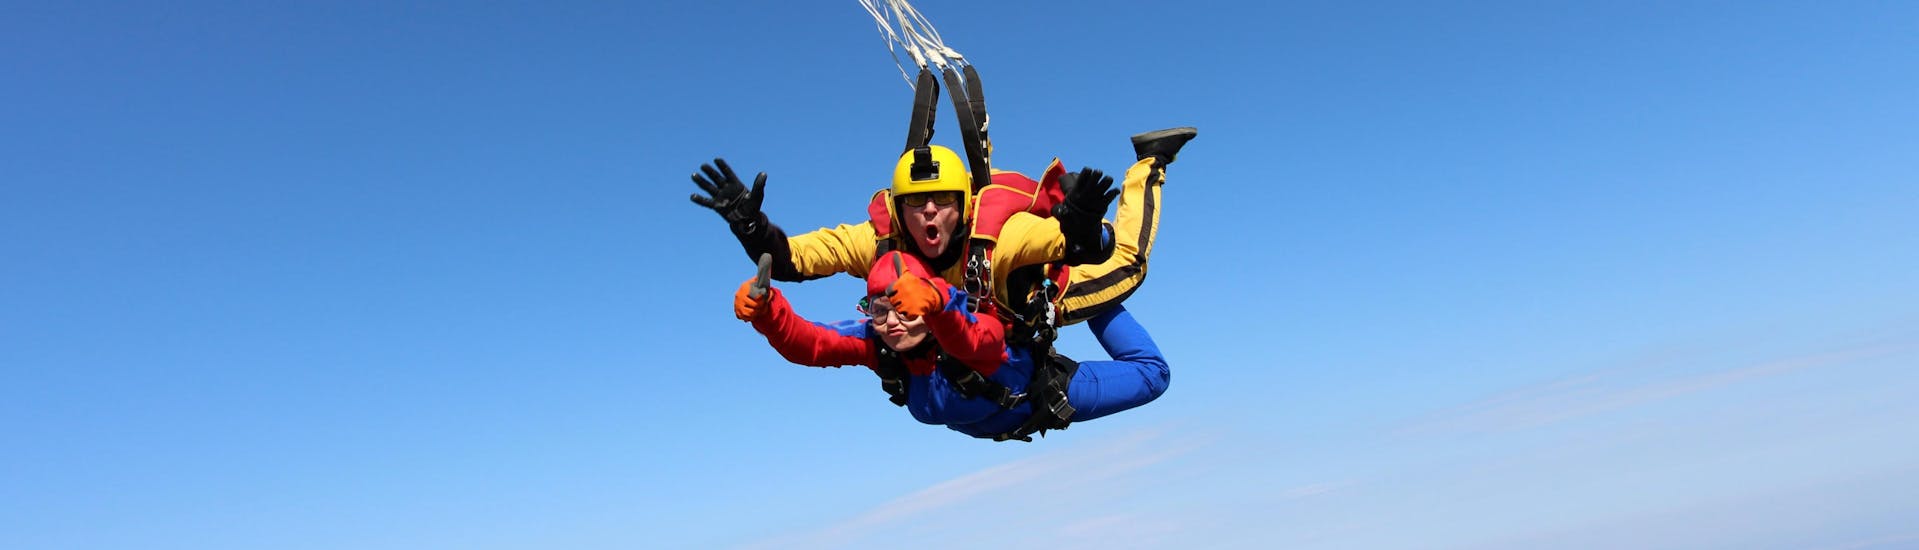 Paracaidistas disfrutando de su salto en paracaídas mientras sobrevuelan Col du Galibier, uno de los sitios más populares para tirarse en paracaídas. 